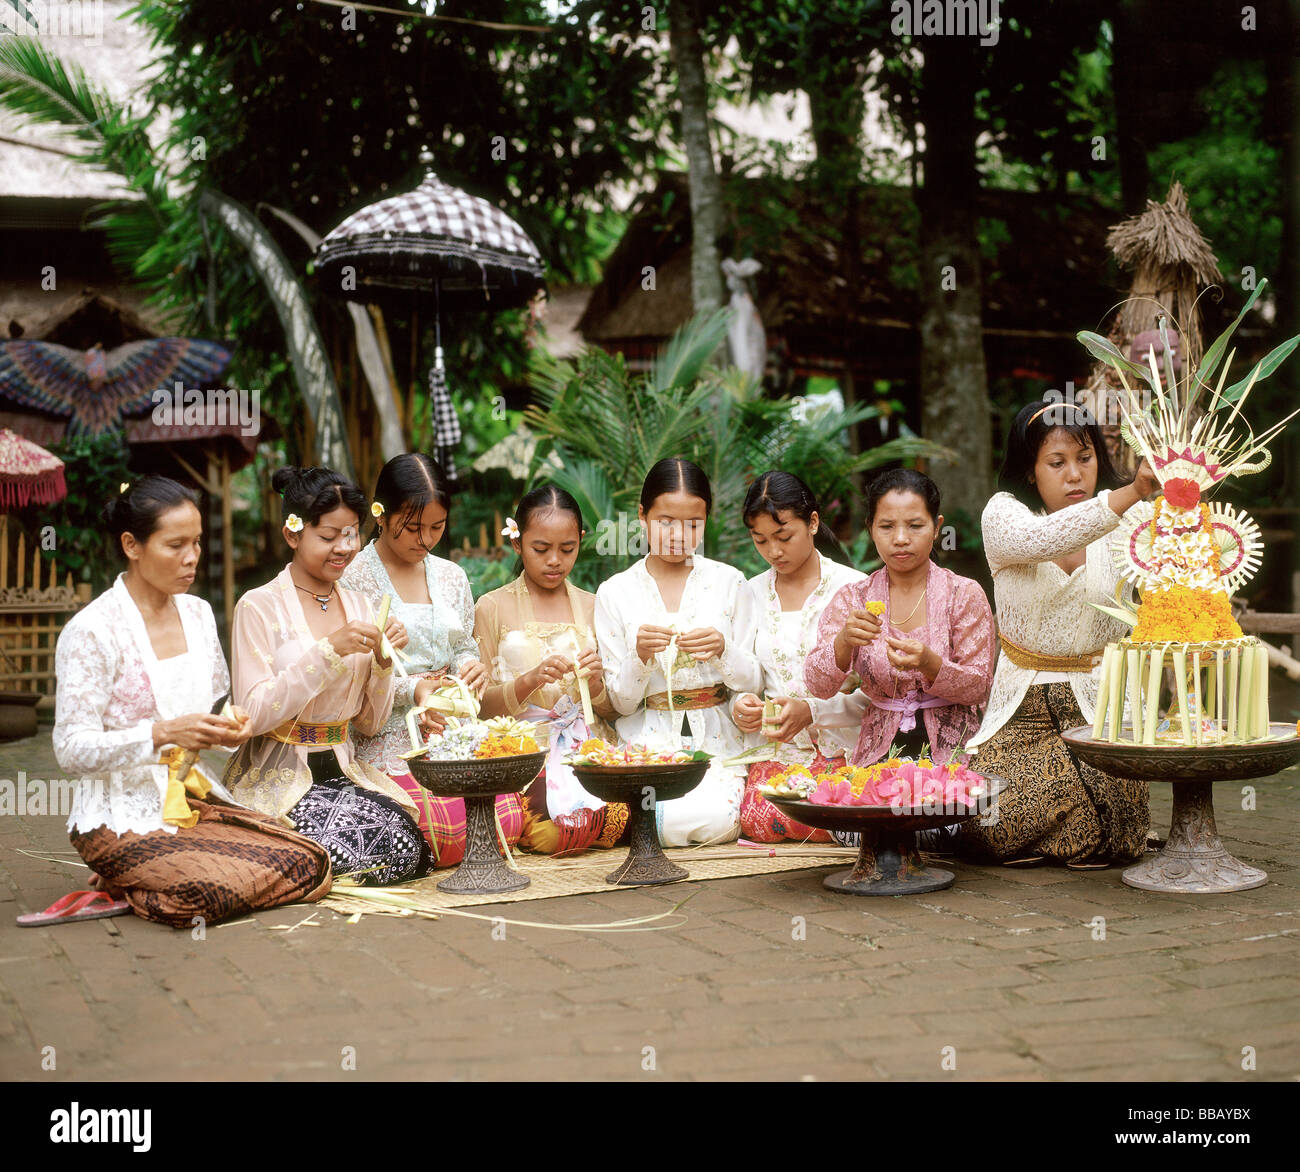 Indonesien, Bali, balinesischen Frauen und Mädchen in traditionellen Kostümen machen Blumenarrangements Stockfoto